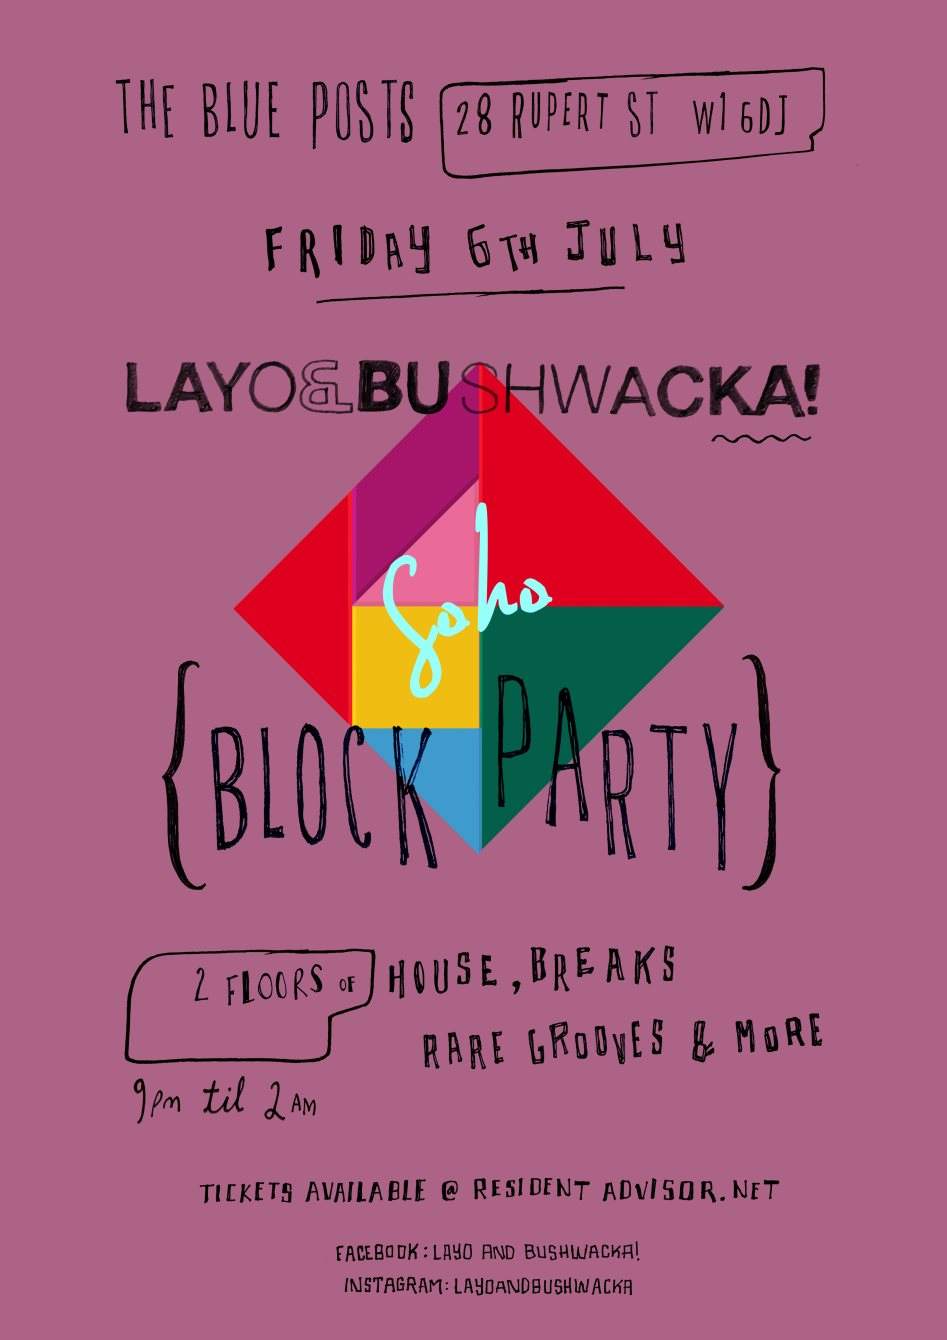 Layo & Bushwacka's Soho Block Party - フライヤー表